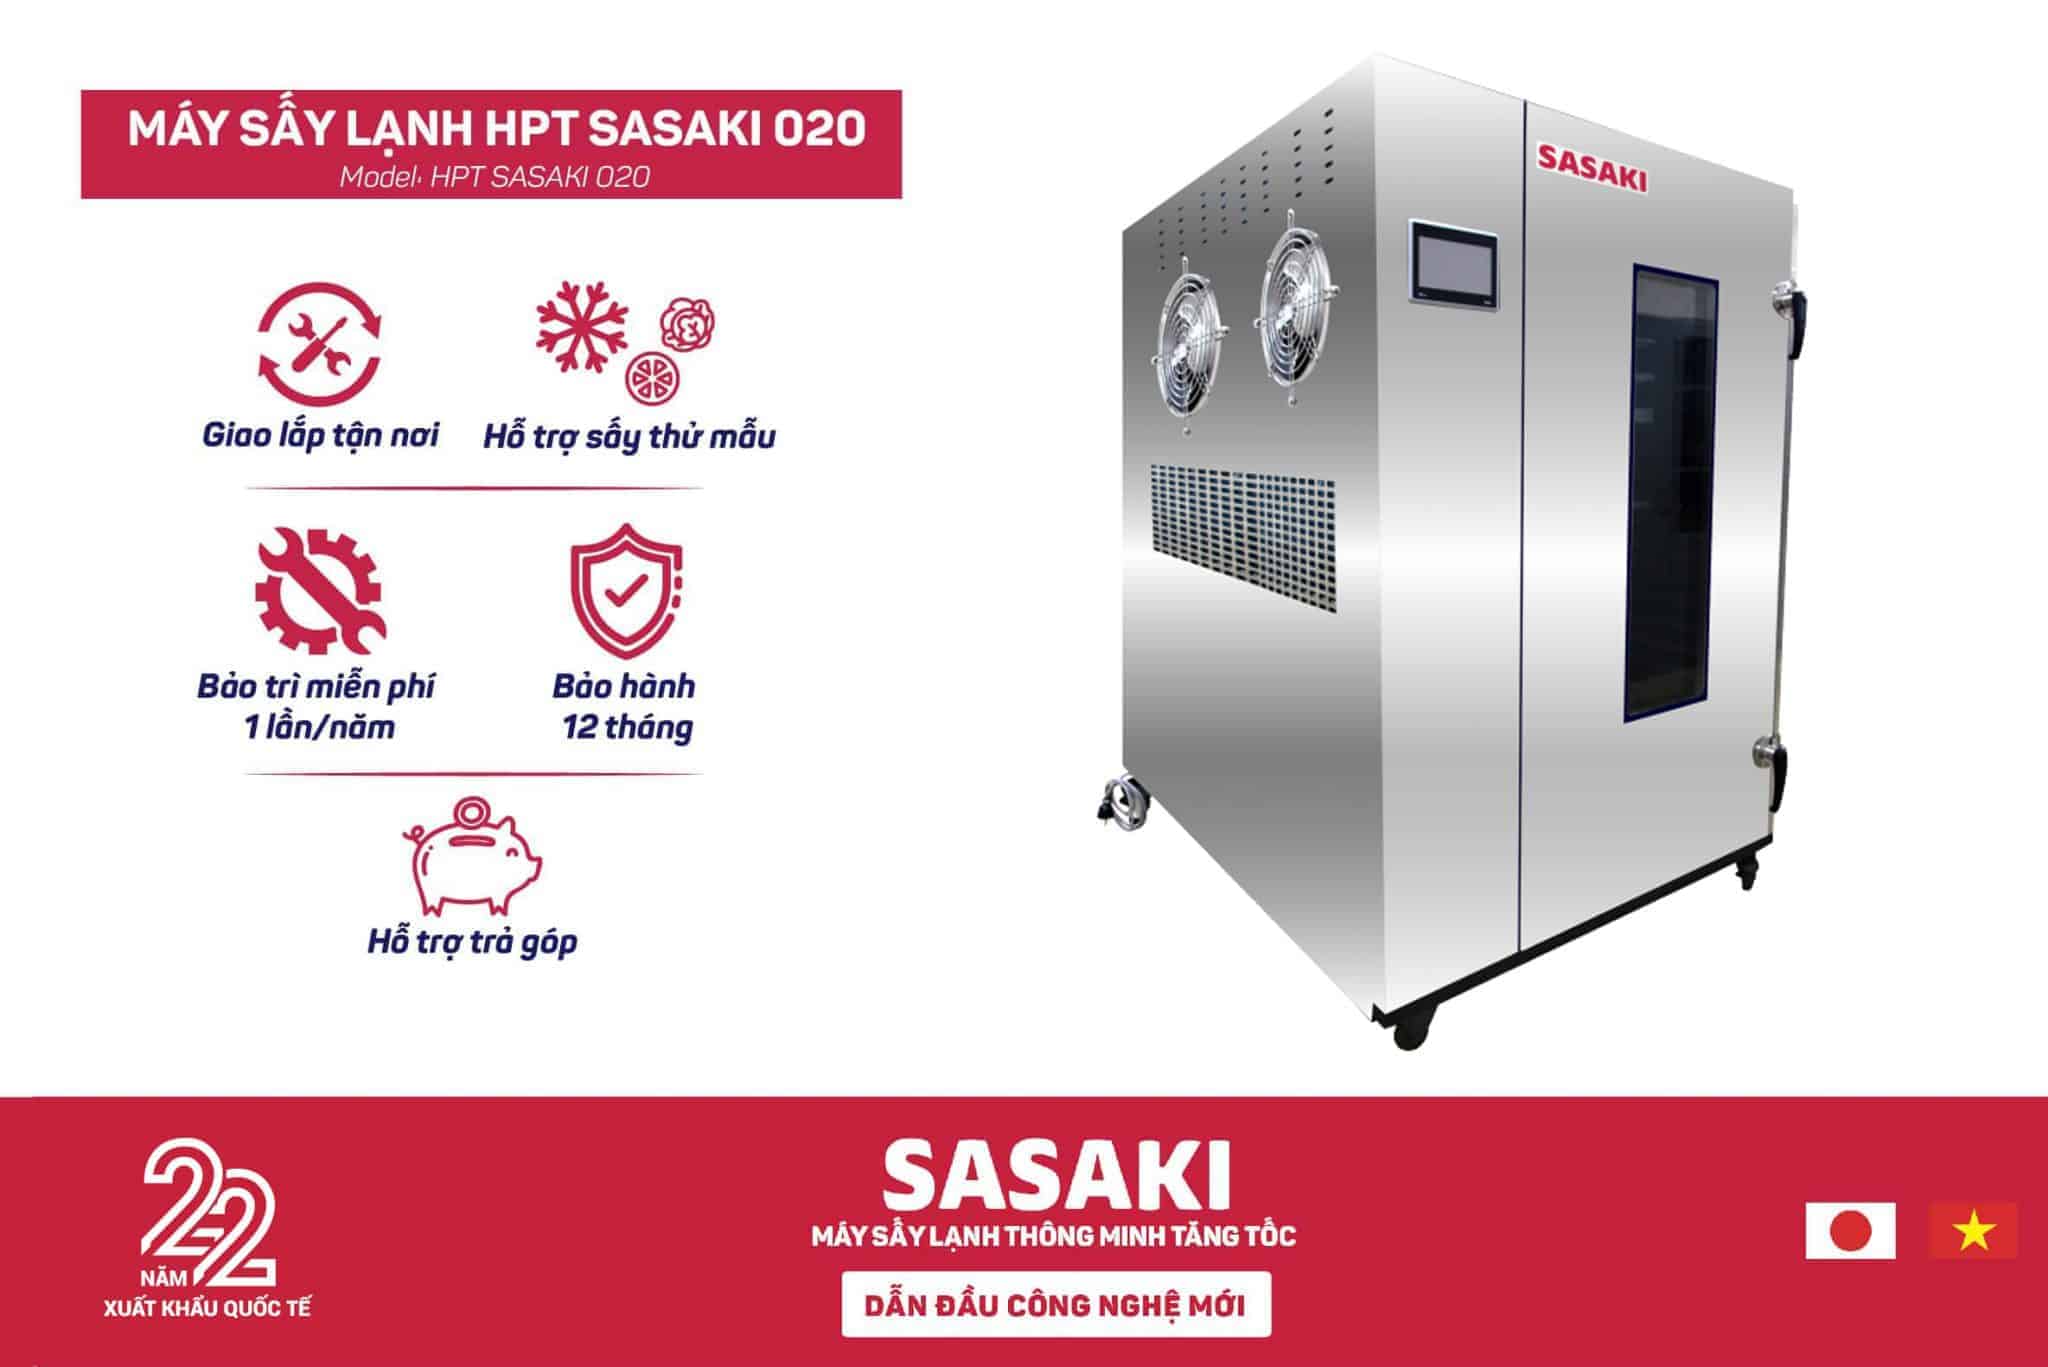 SASAKI còn cung cấp cho thị trường máy sấy nhiệt và máy sấy đa năng